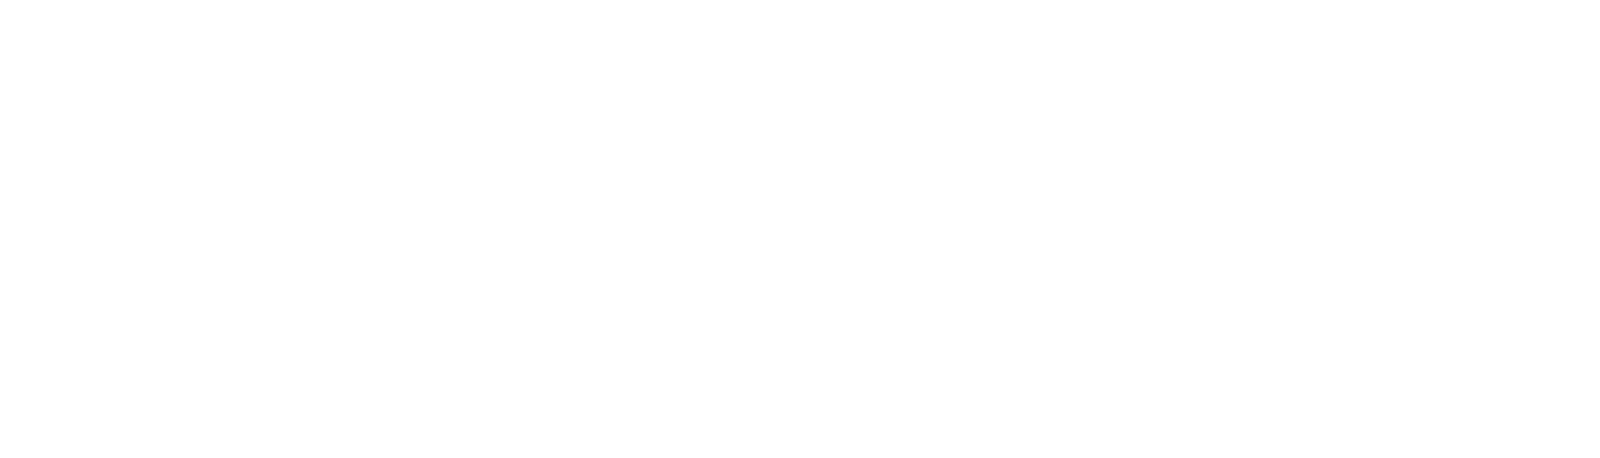 Wireless Pulse